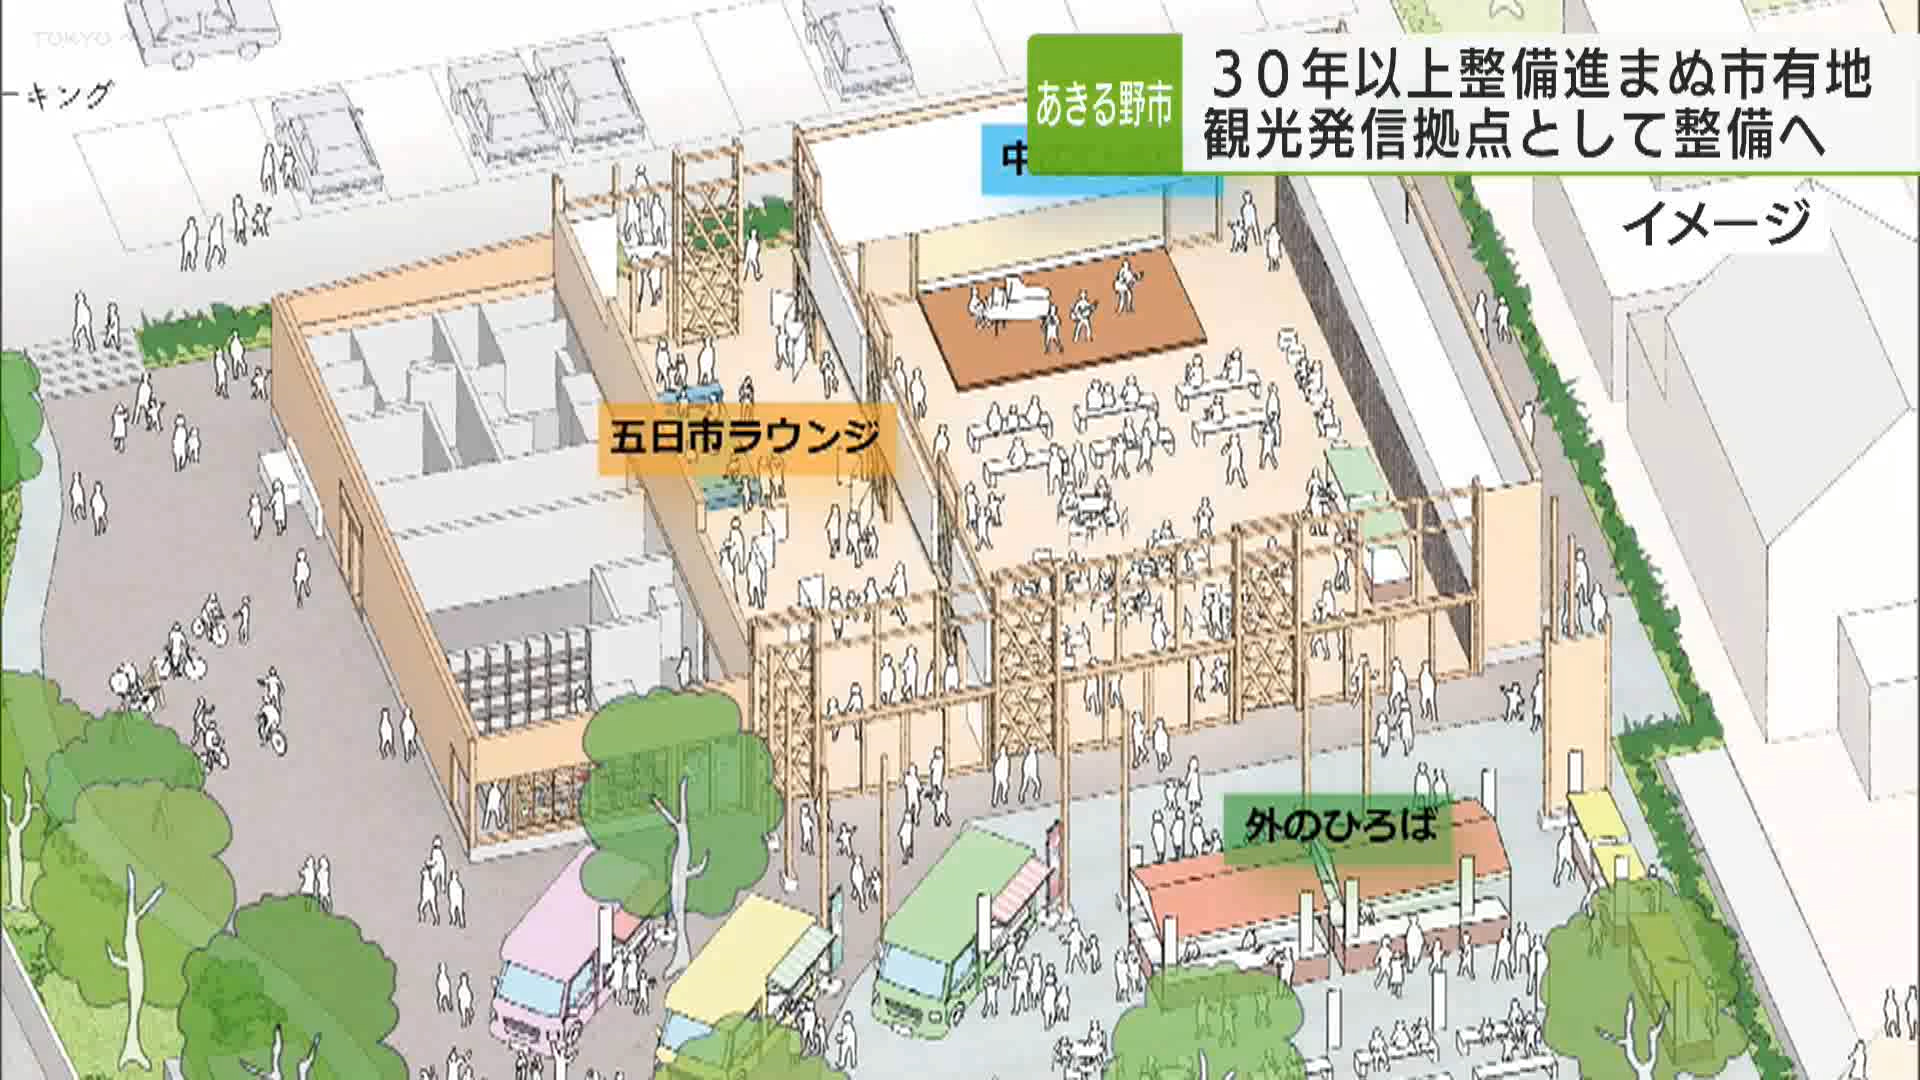 あきる野市は、30年以上整備が進んでいなかったJR武蔵五日市駅前の市有地を、観光拠点として整備する計画を打ち出しました。